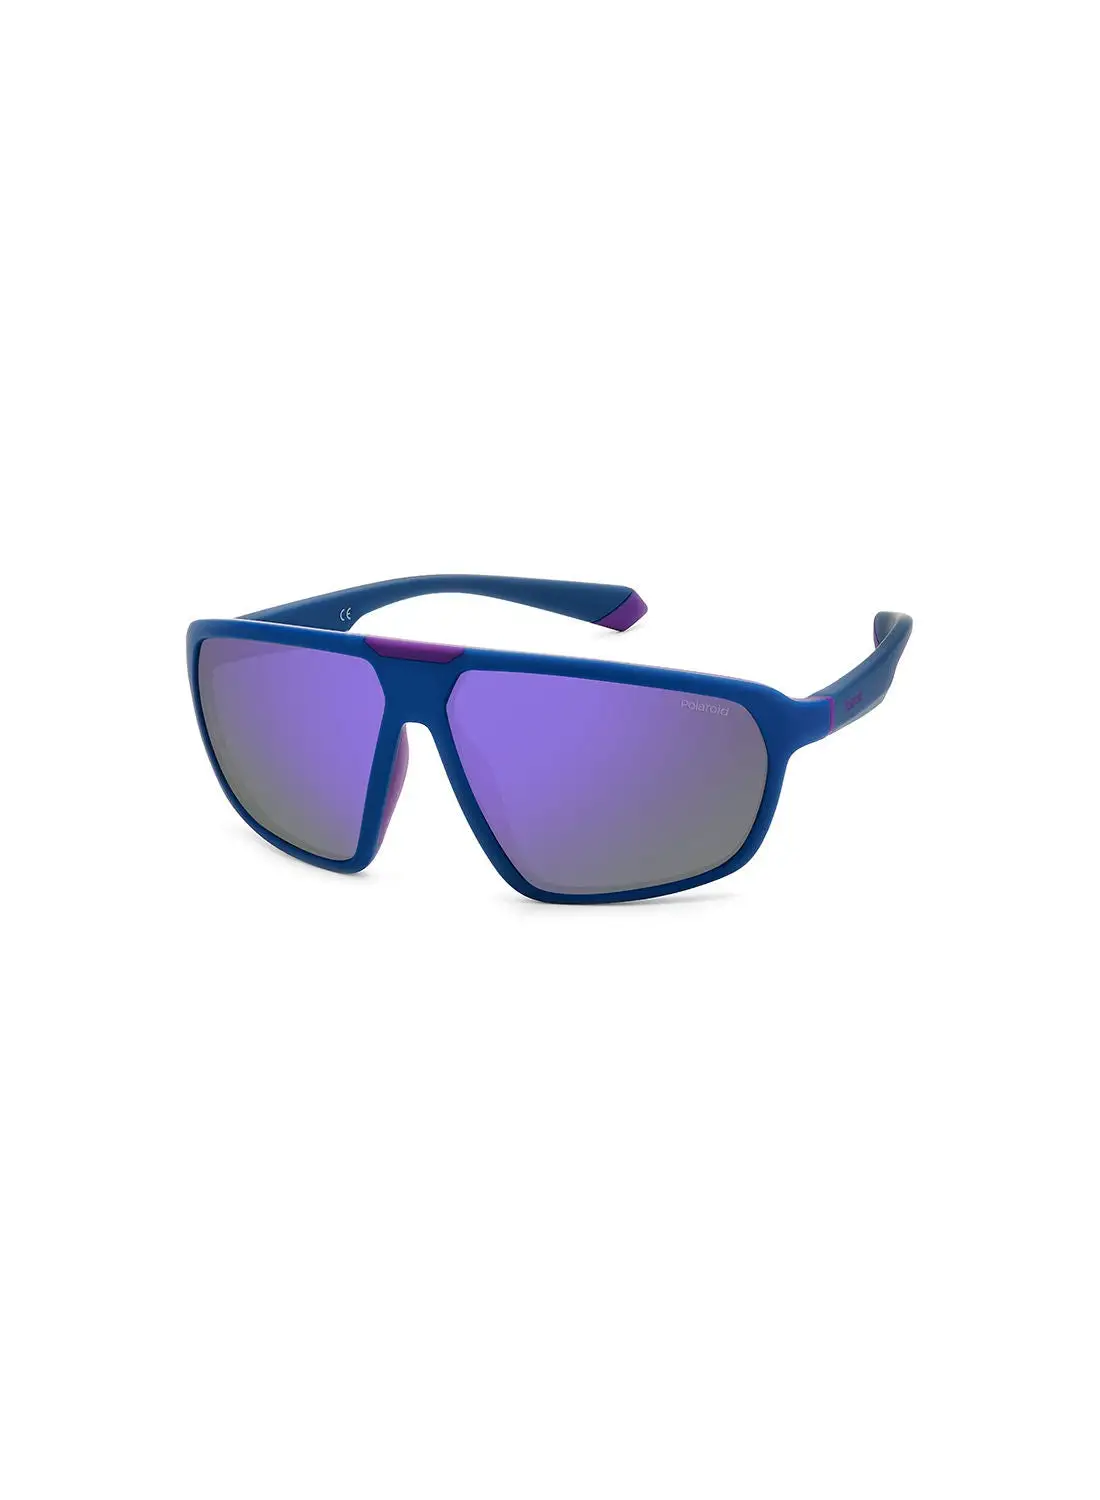 Polaroid Unisex UV Protection Rectangular Sunglasses - Pld 2142/S Mt Bl Vlt 61 - Lens Size: 61 Mm